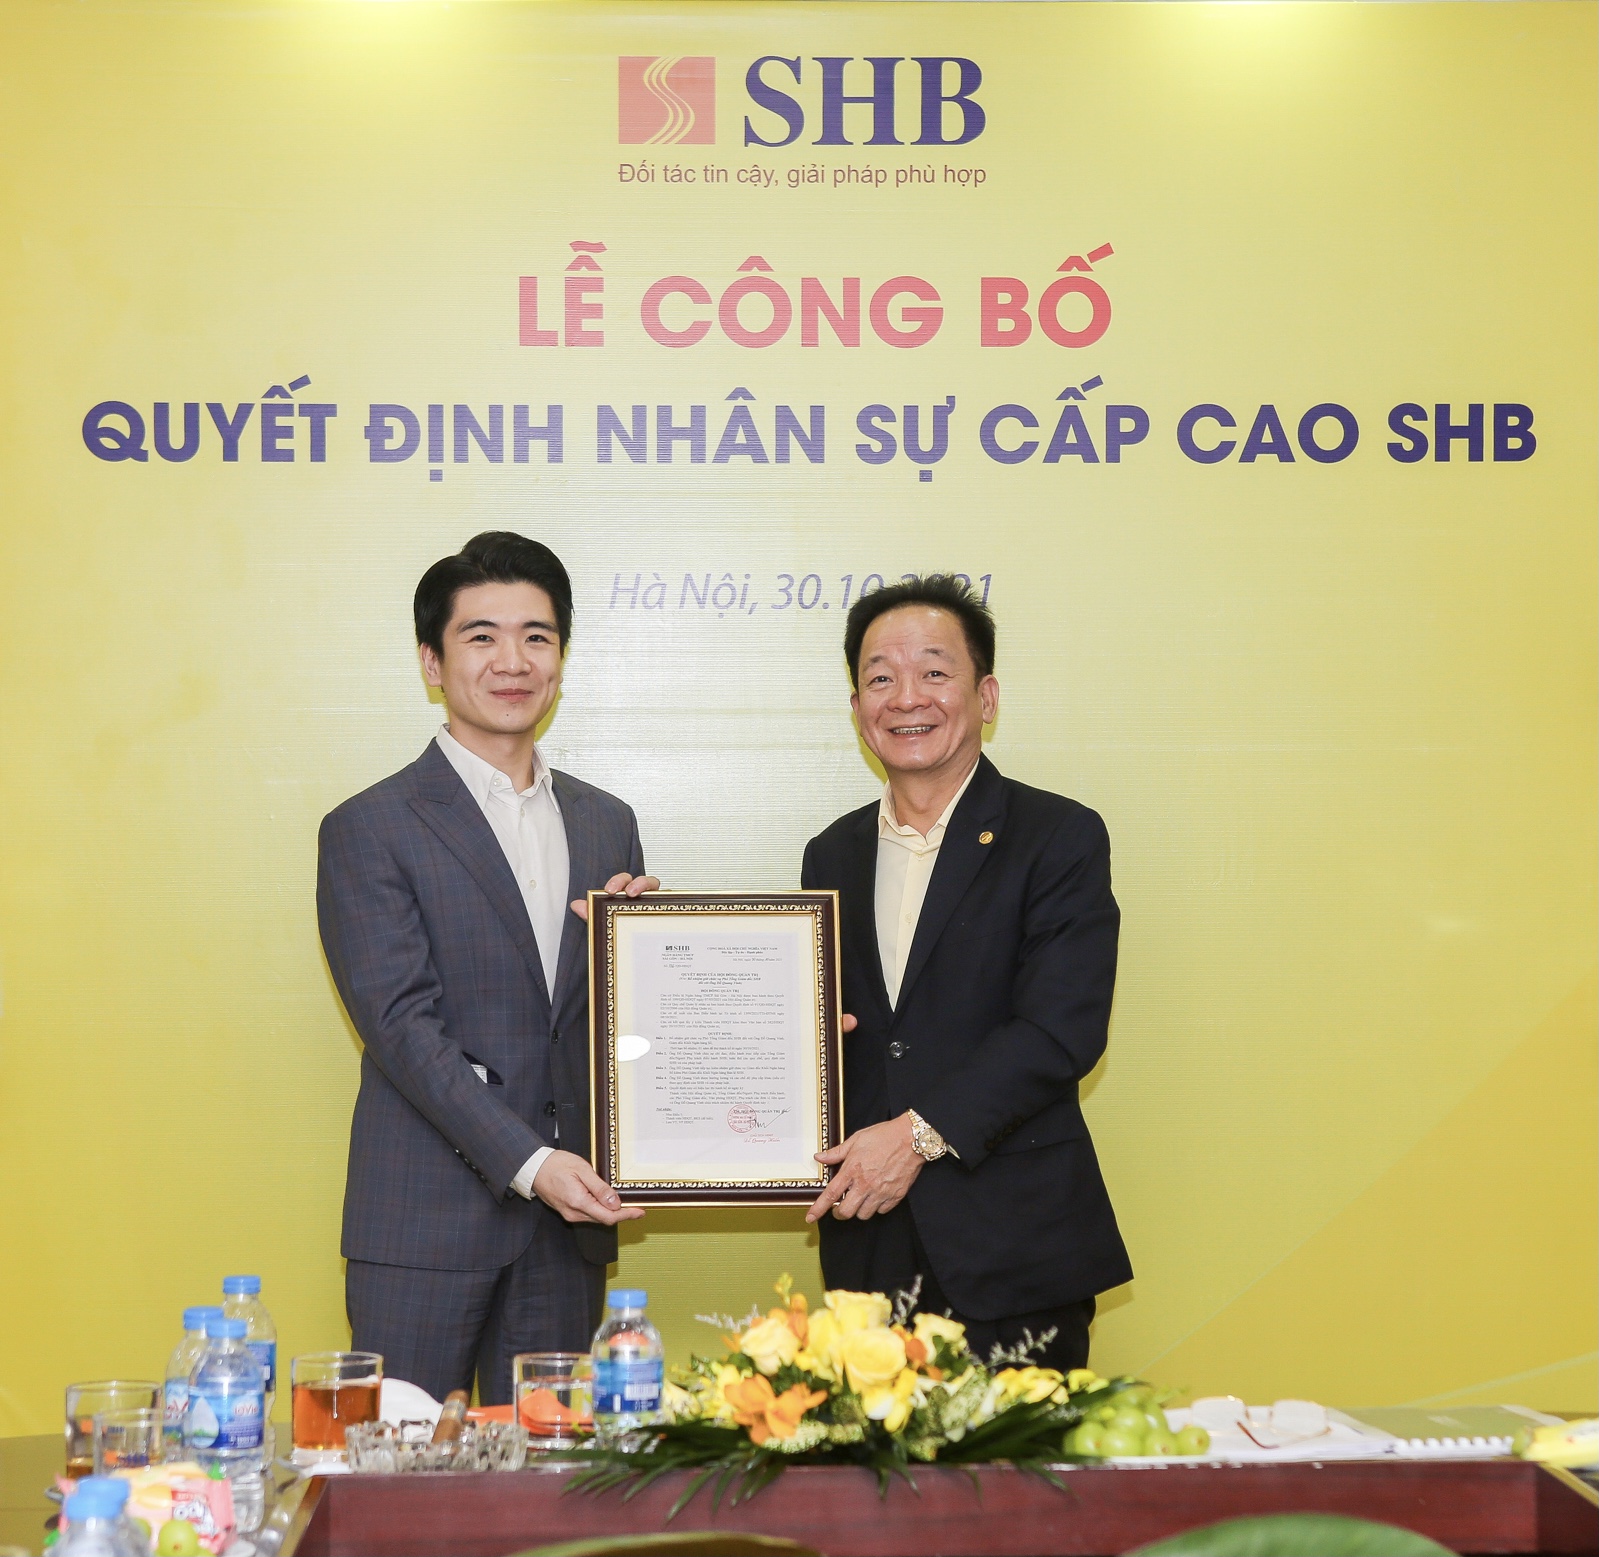  SHB bổ nhiệm ông Đỗ Quang Vinh làm Phó Tổng Giám đốc 